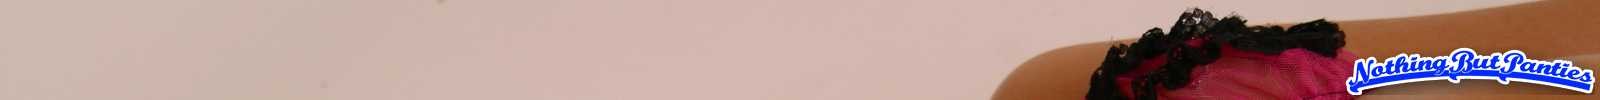 Loni durchsichtige rosa Höschen
 #72634169